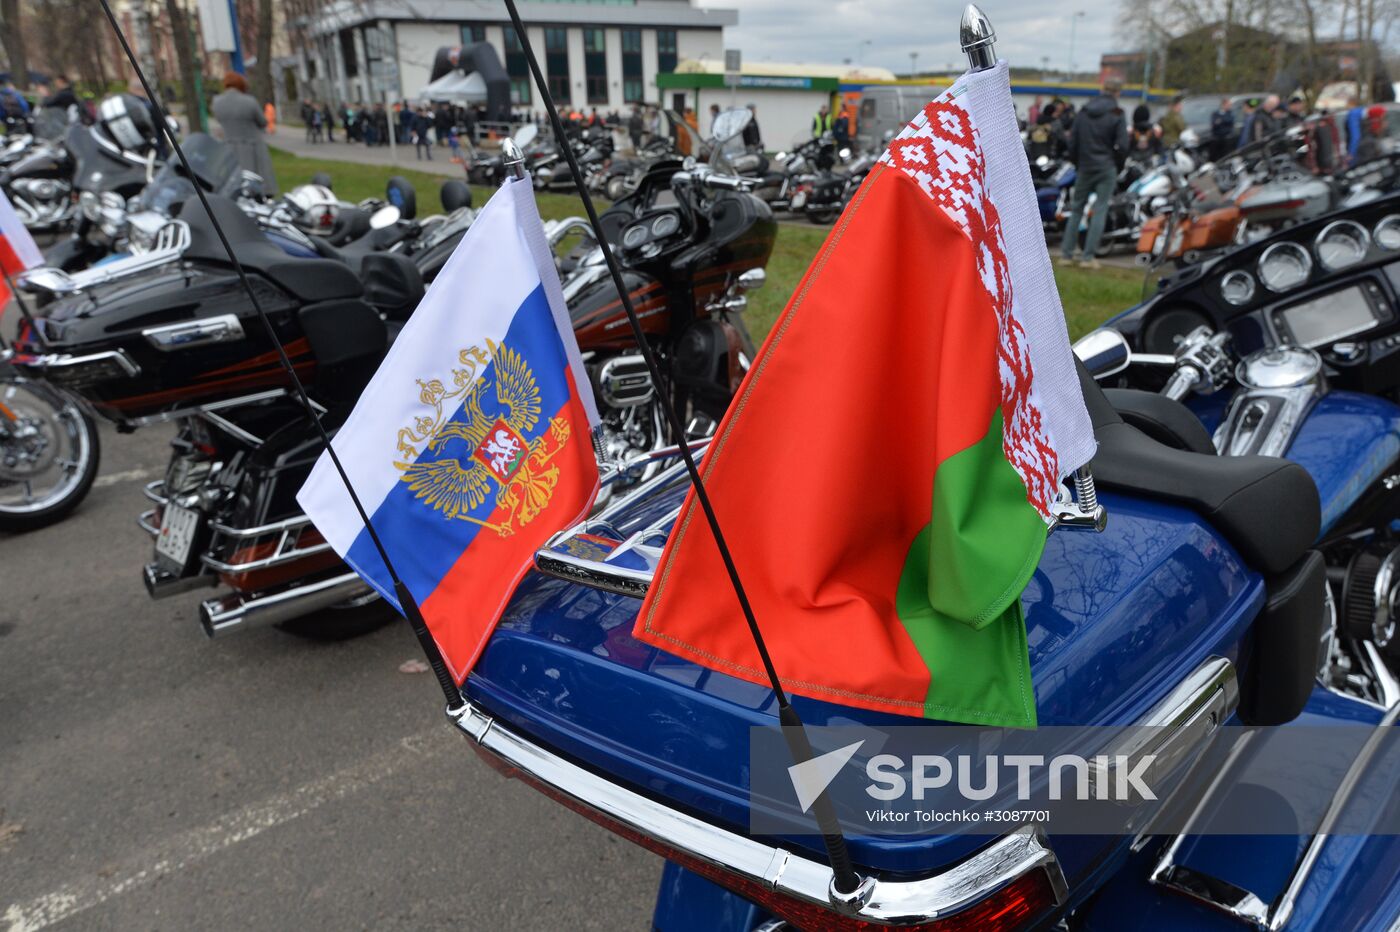 2017 biking season opens in Minsk